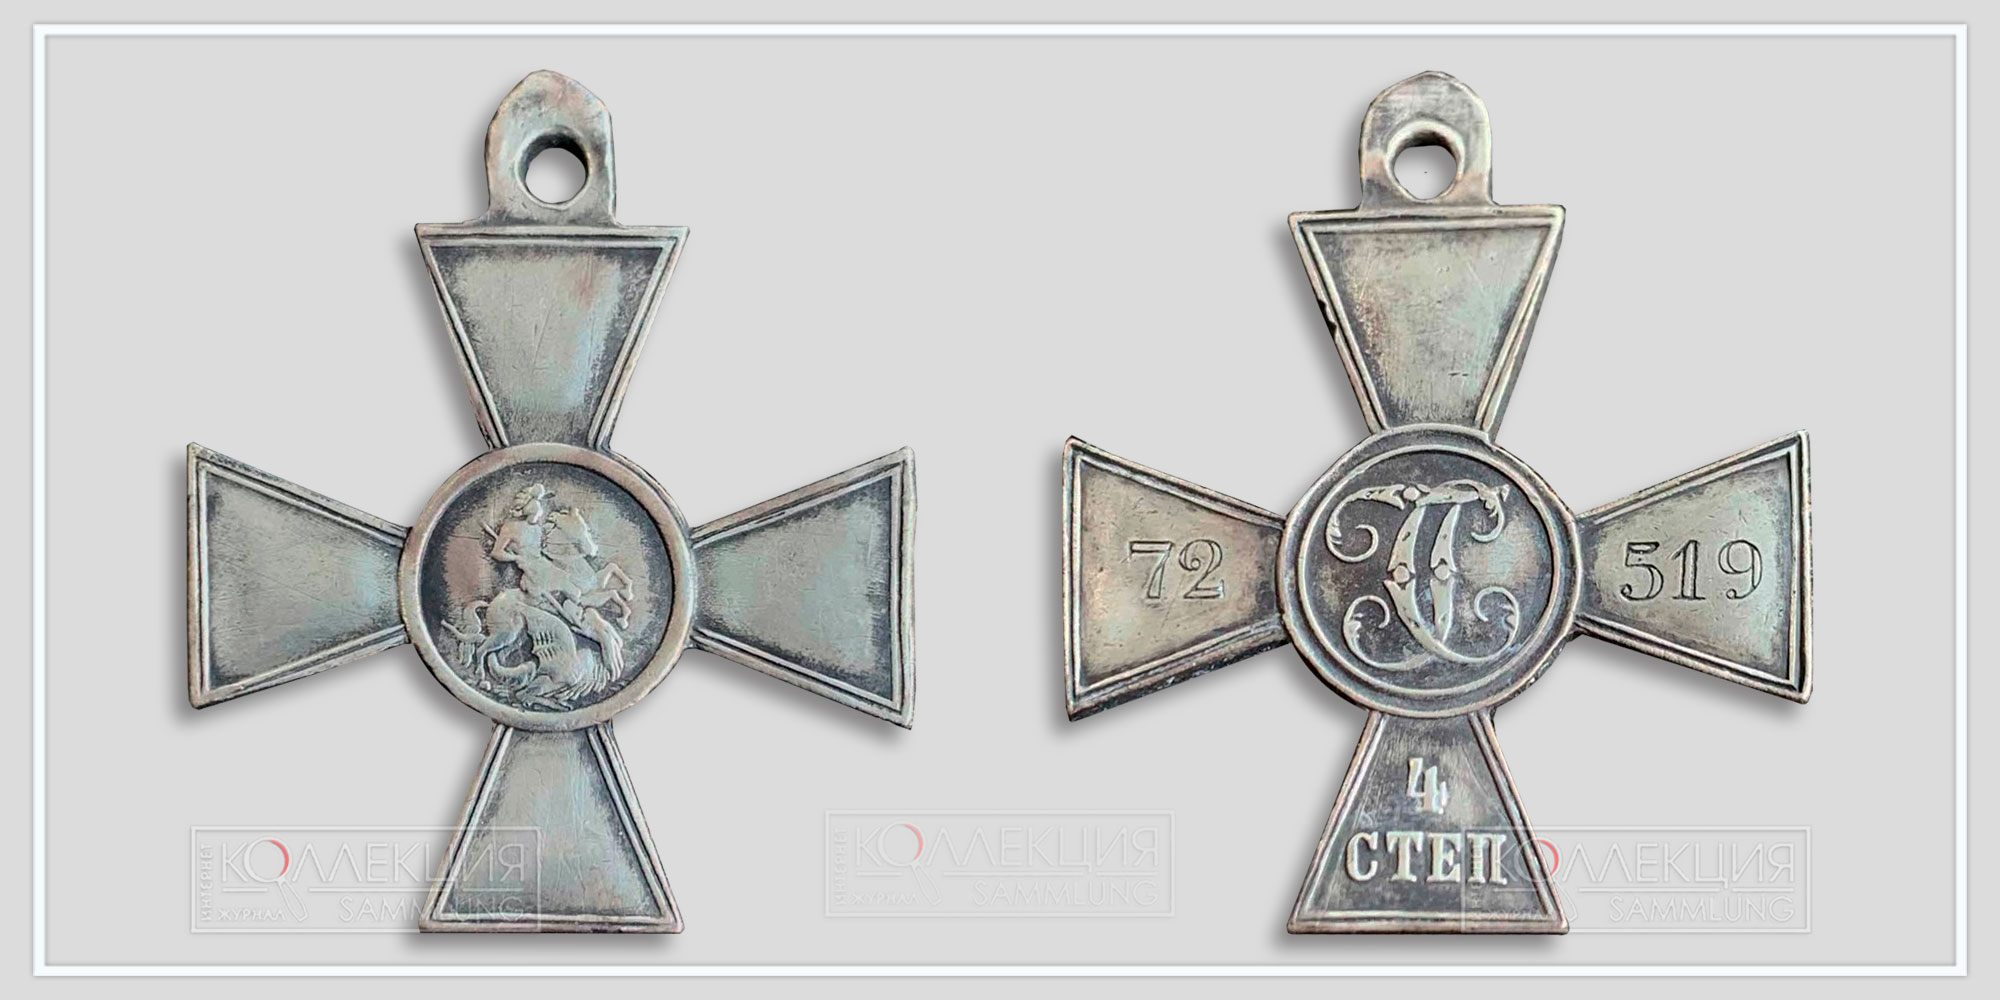 Знак отличия Военного ордена 4-й степени №72519, которым был награжден Платон Диких. Фото с https://sammler.ru 